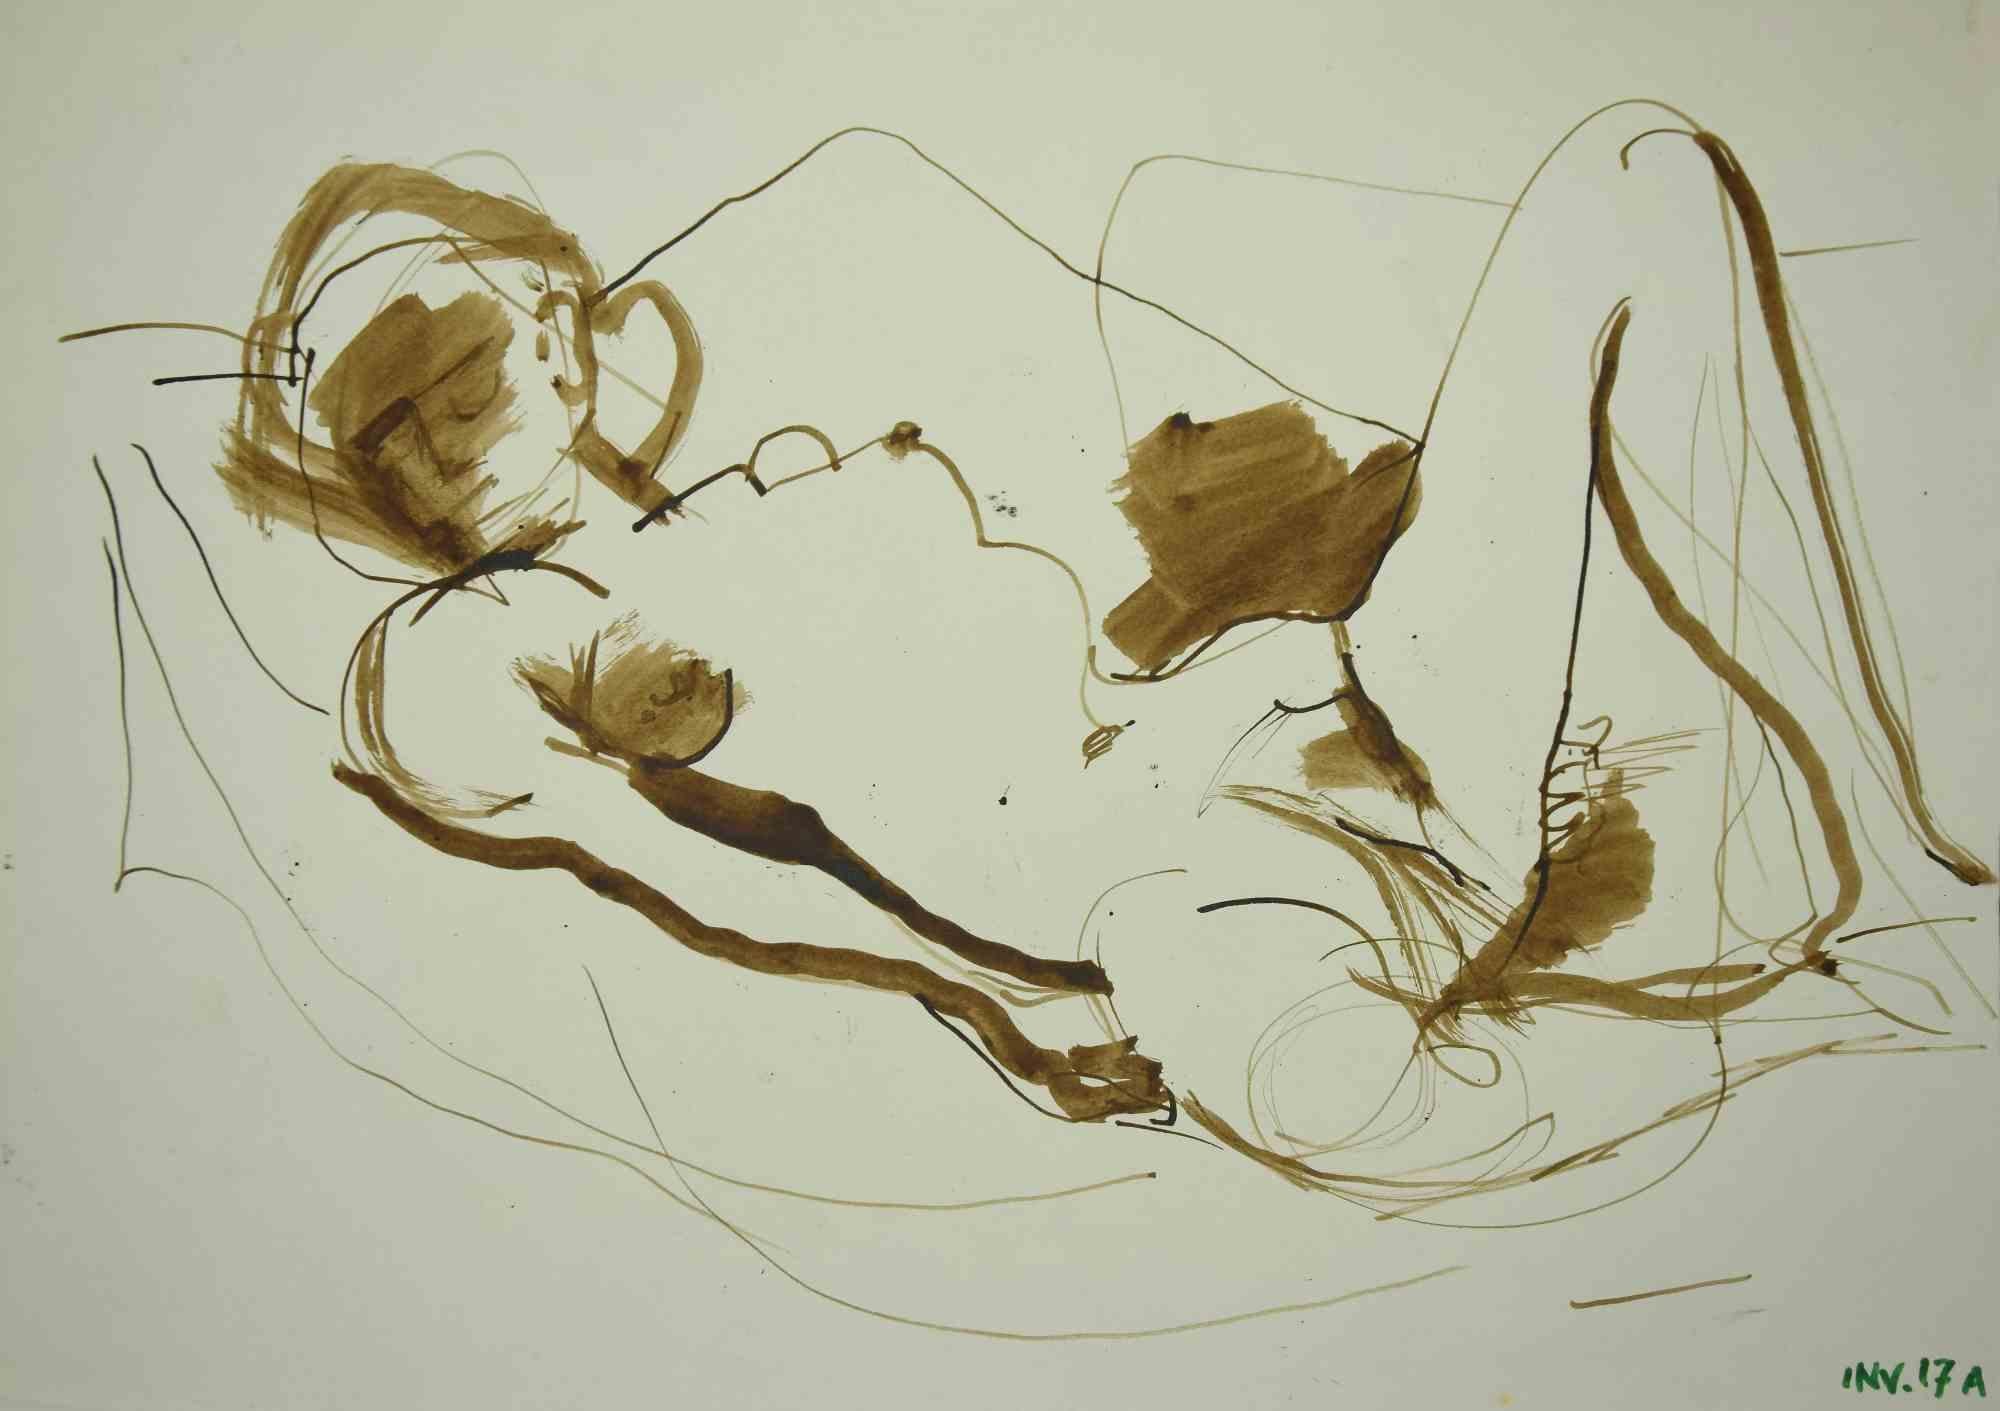 Reclined Nude ist eine Originalzeichnung in Tusche und Aquarell von Leo Guida aus den 1970er Jahren.

Guter Zustand.

Leo Guida  (1992 - 2017). Mit seinem Gespür für aktuelle Themen, künstlerische Strömungen und historische Techniken ist es Leo